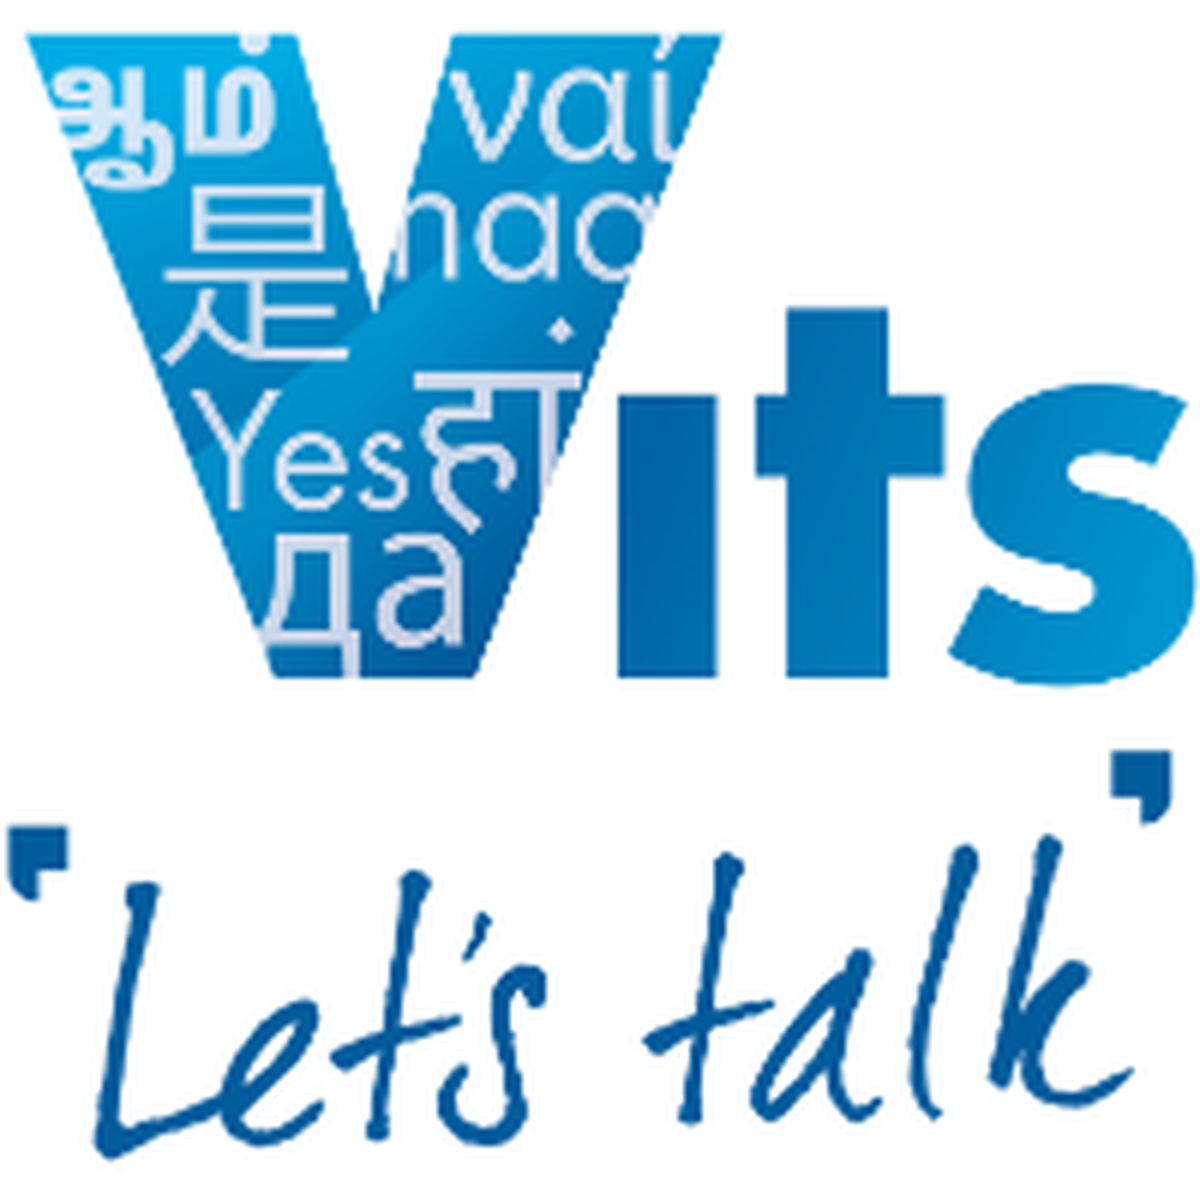 VITS logo